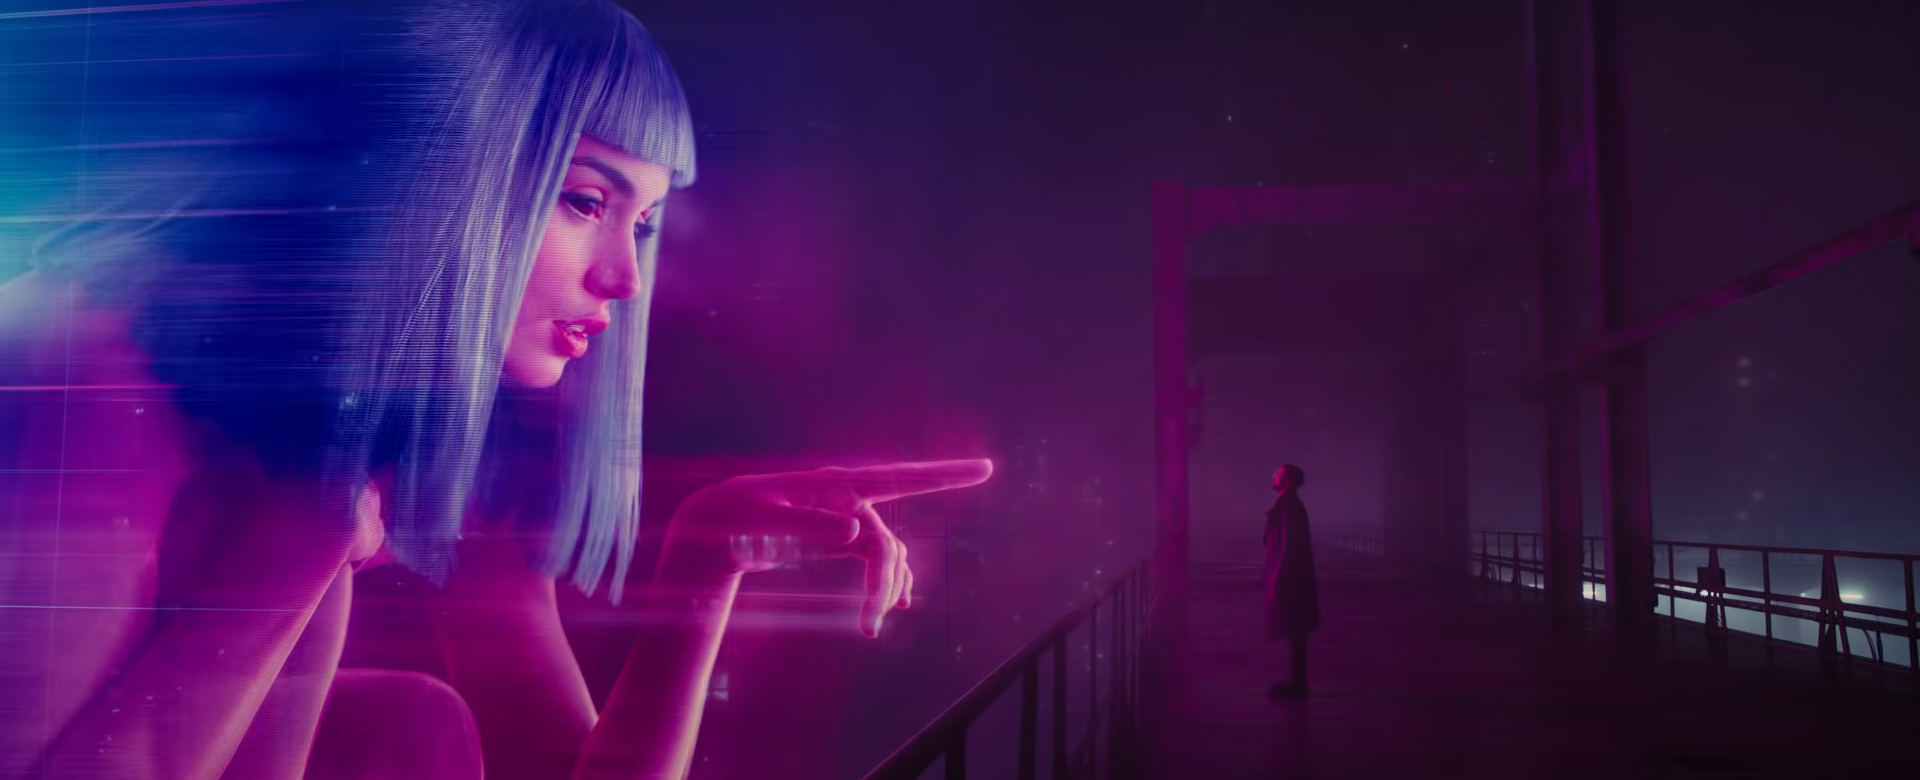 Záber z filmu Blade Runner 2049